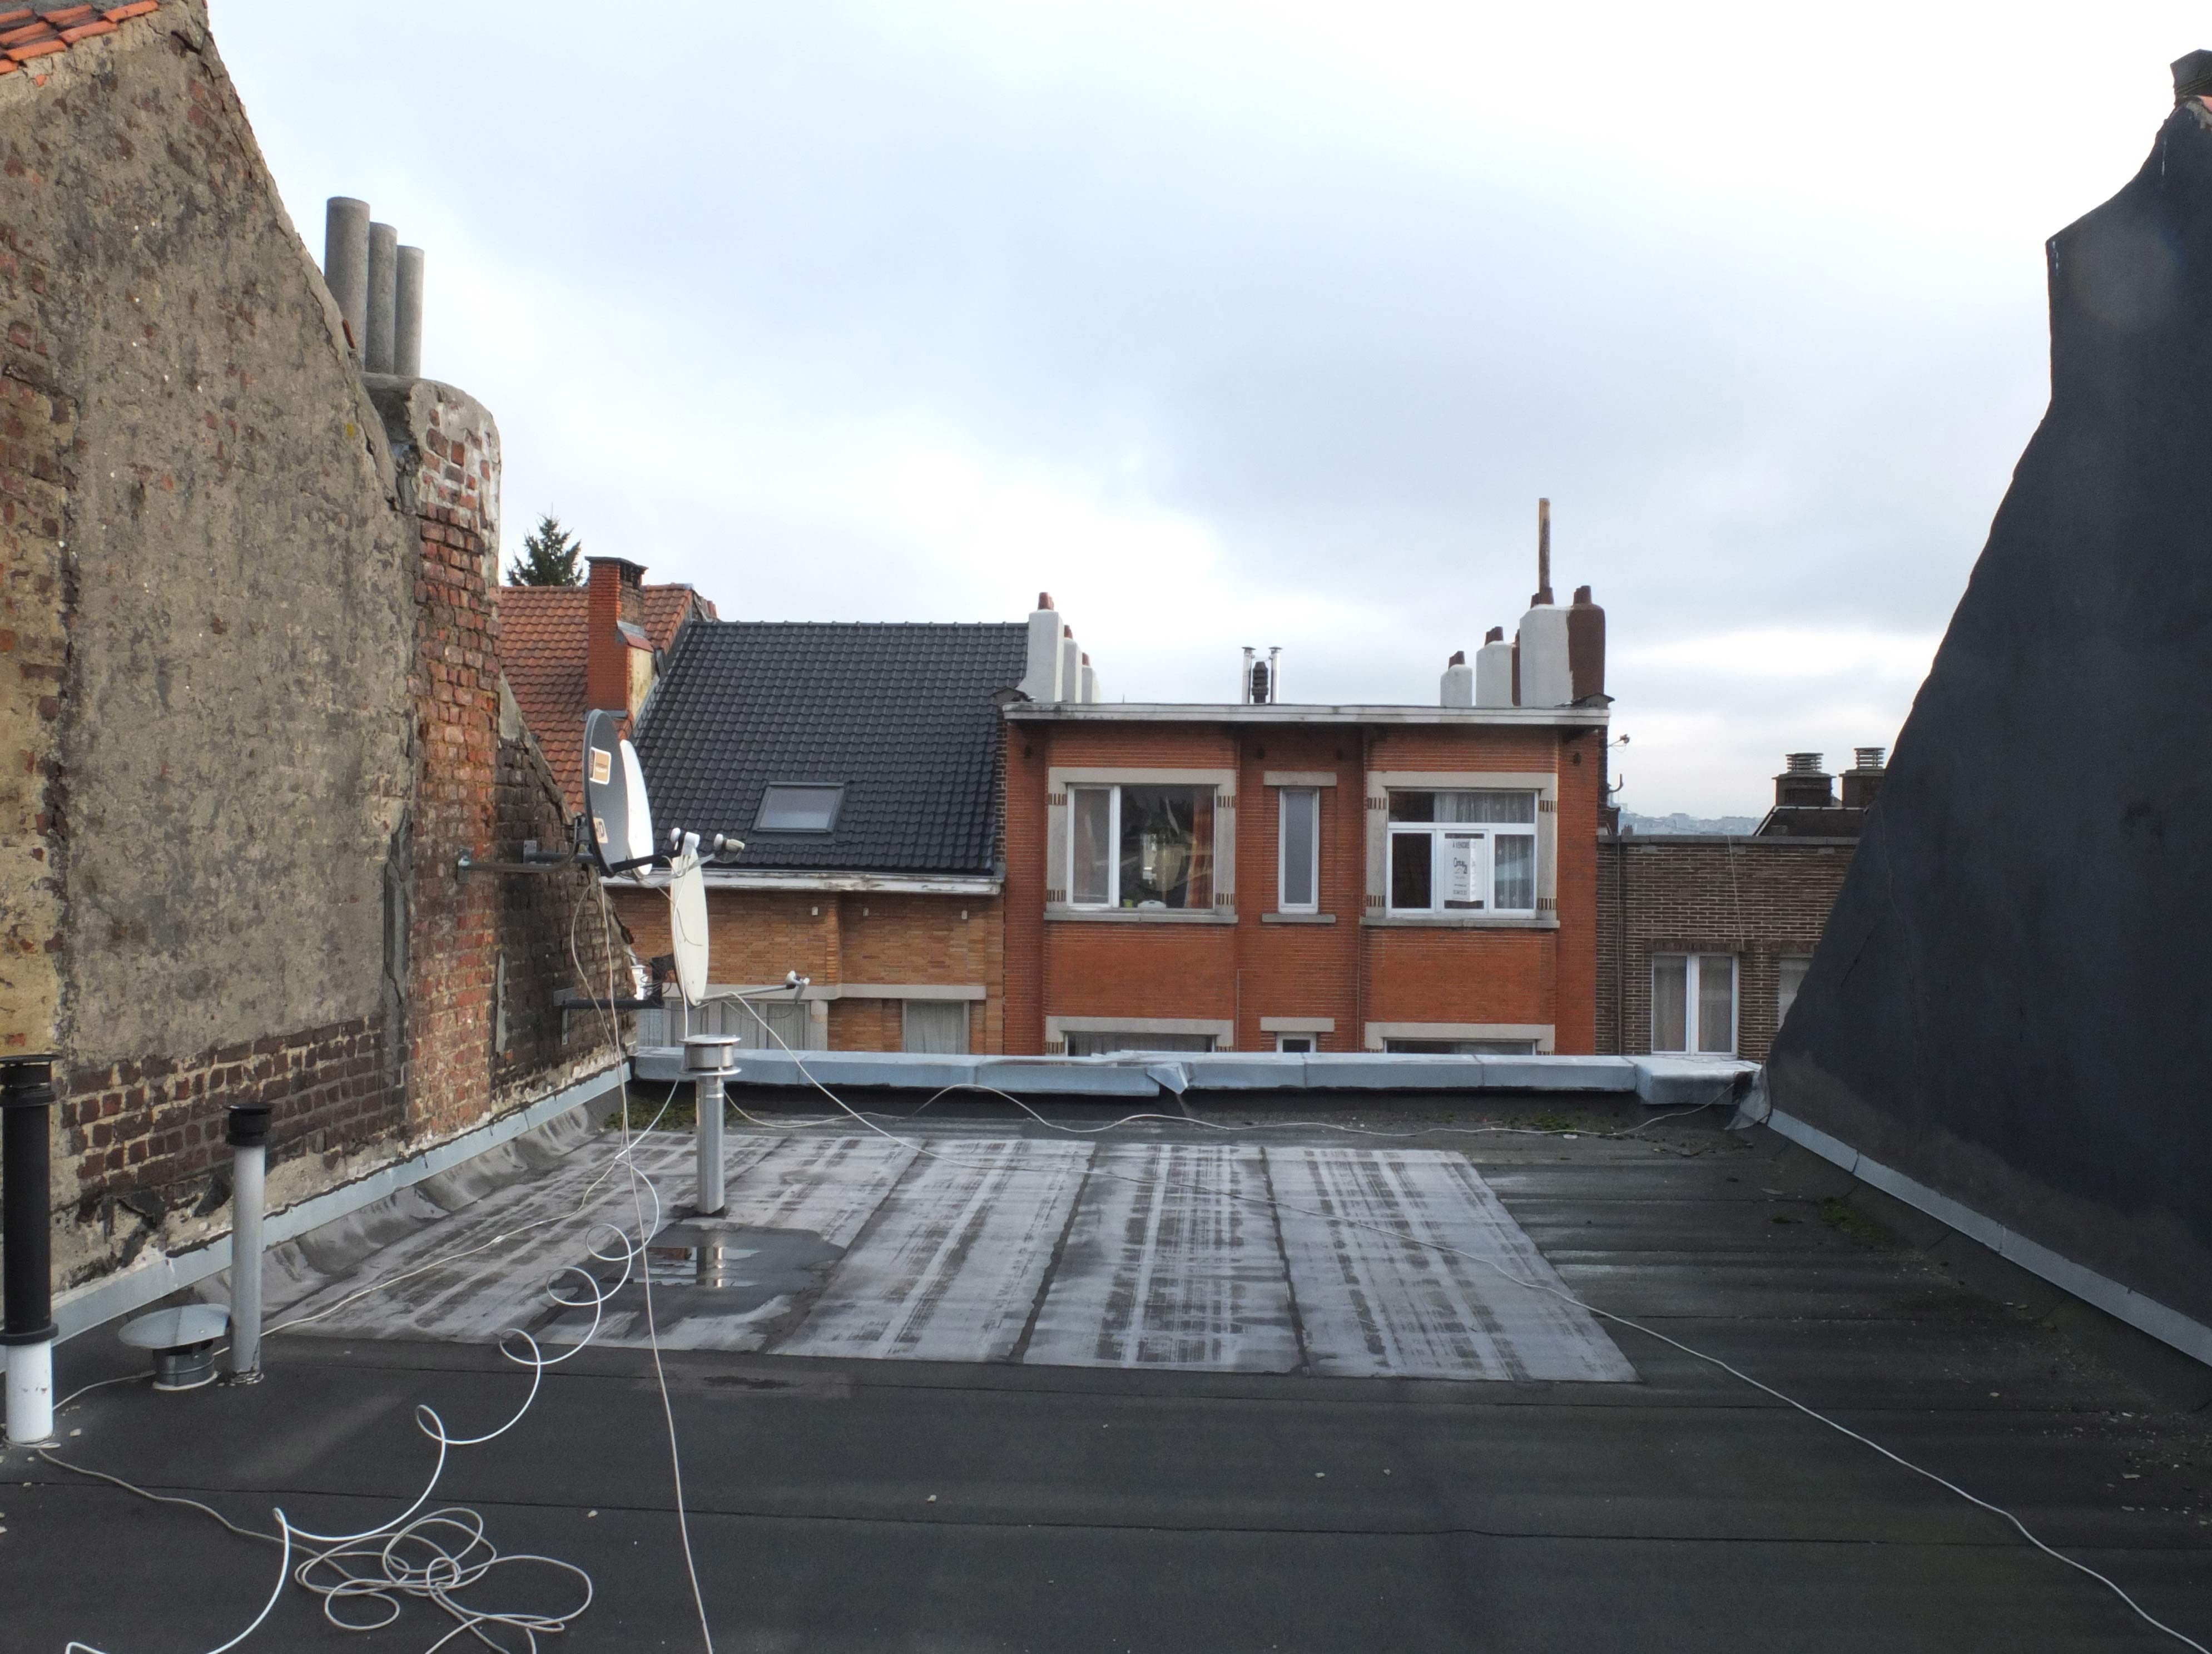 une toiture plate bitumé entre deux pignon qui regarde son vis-à-vis : voici le lieu du projet